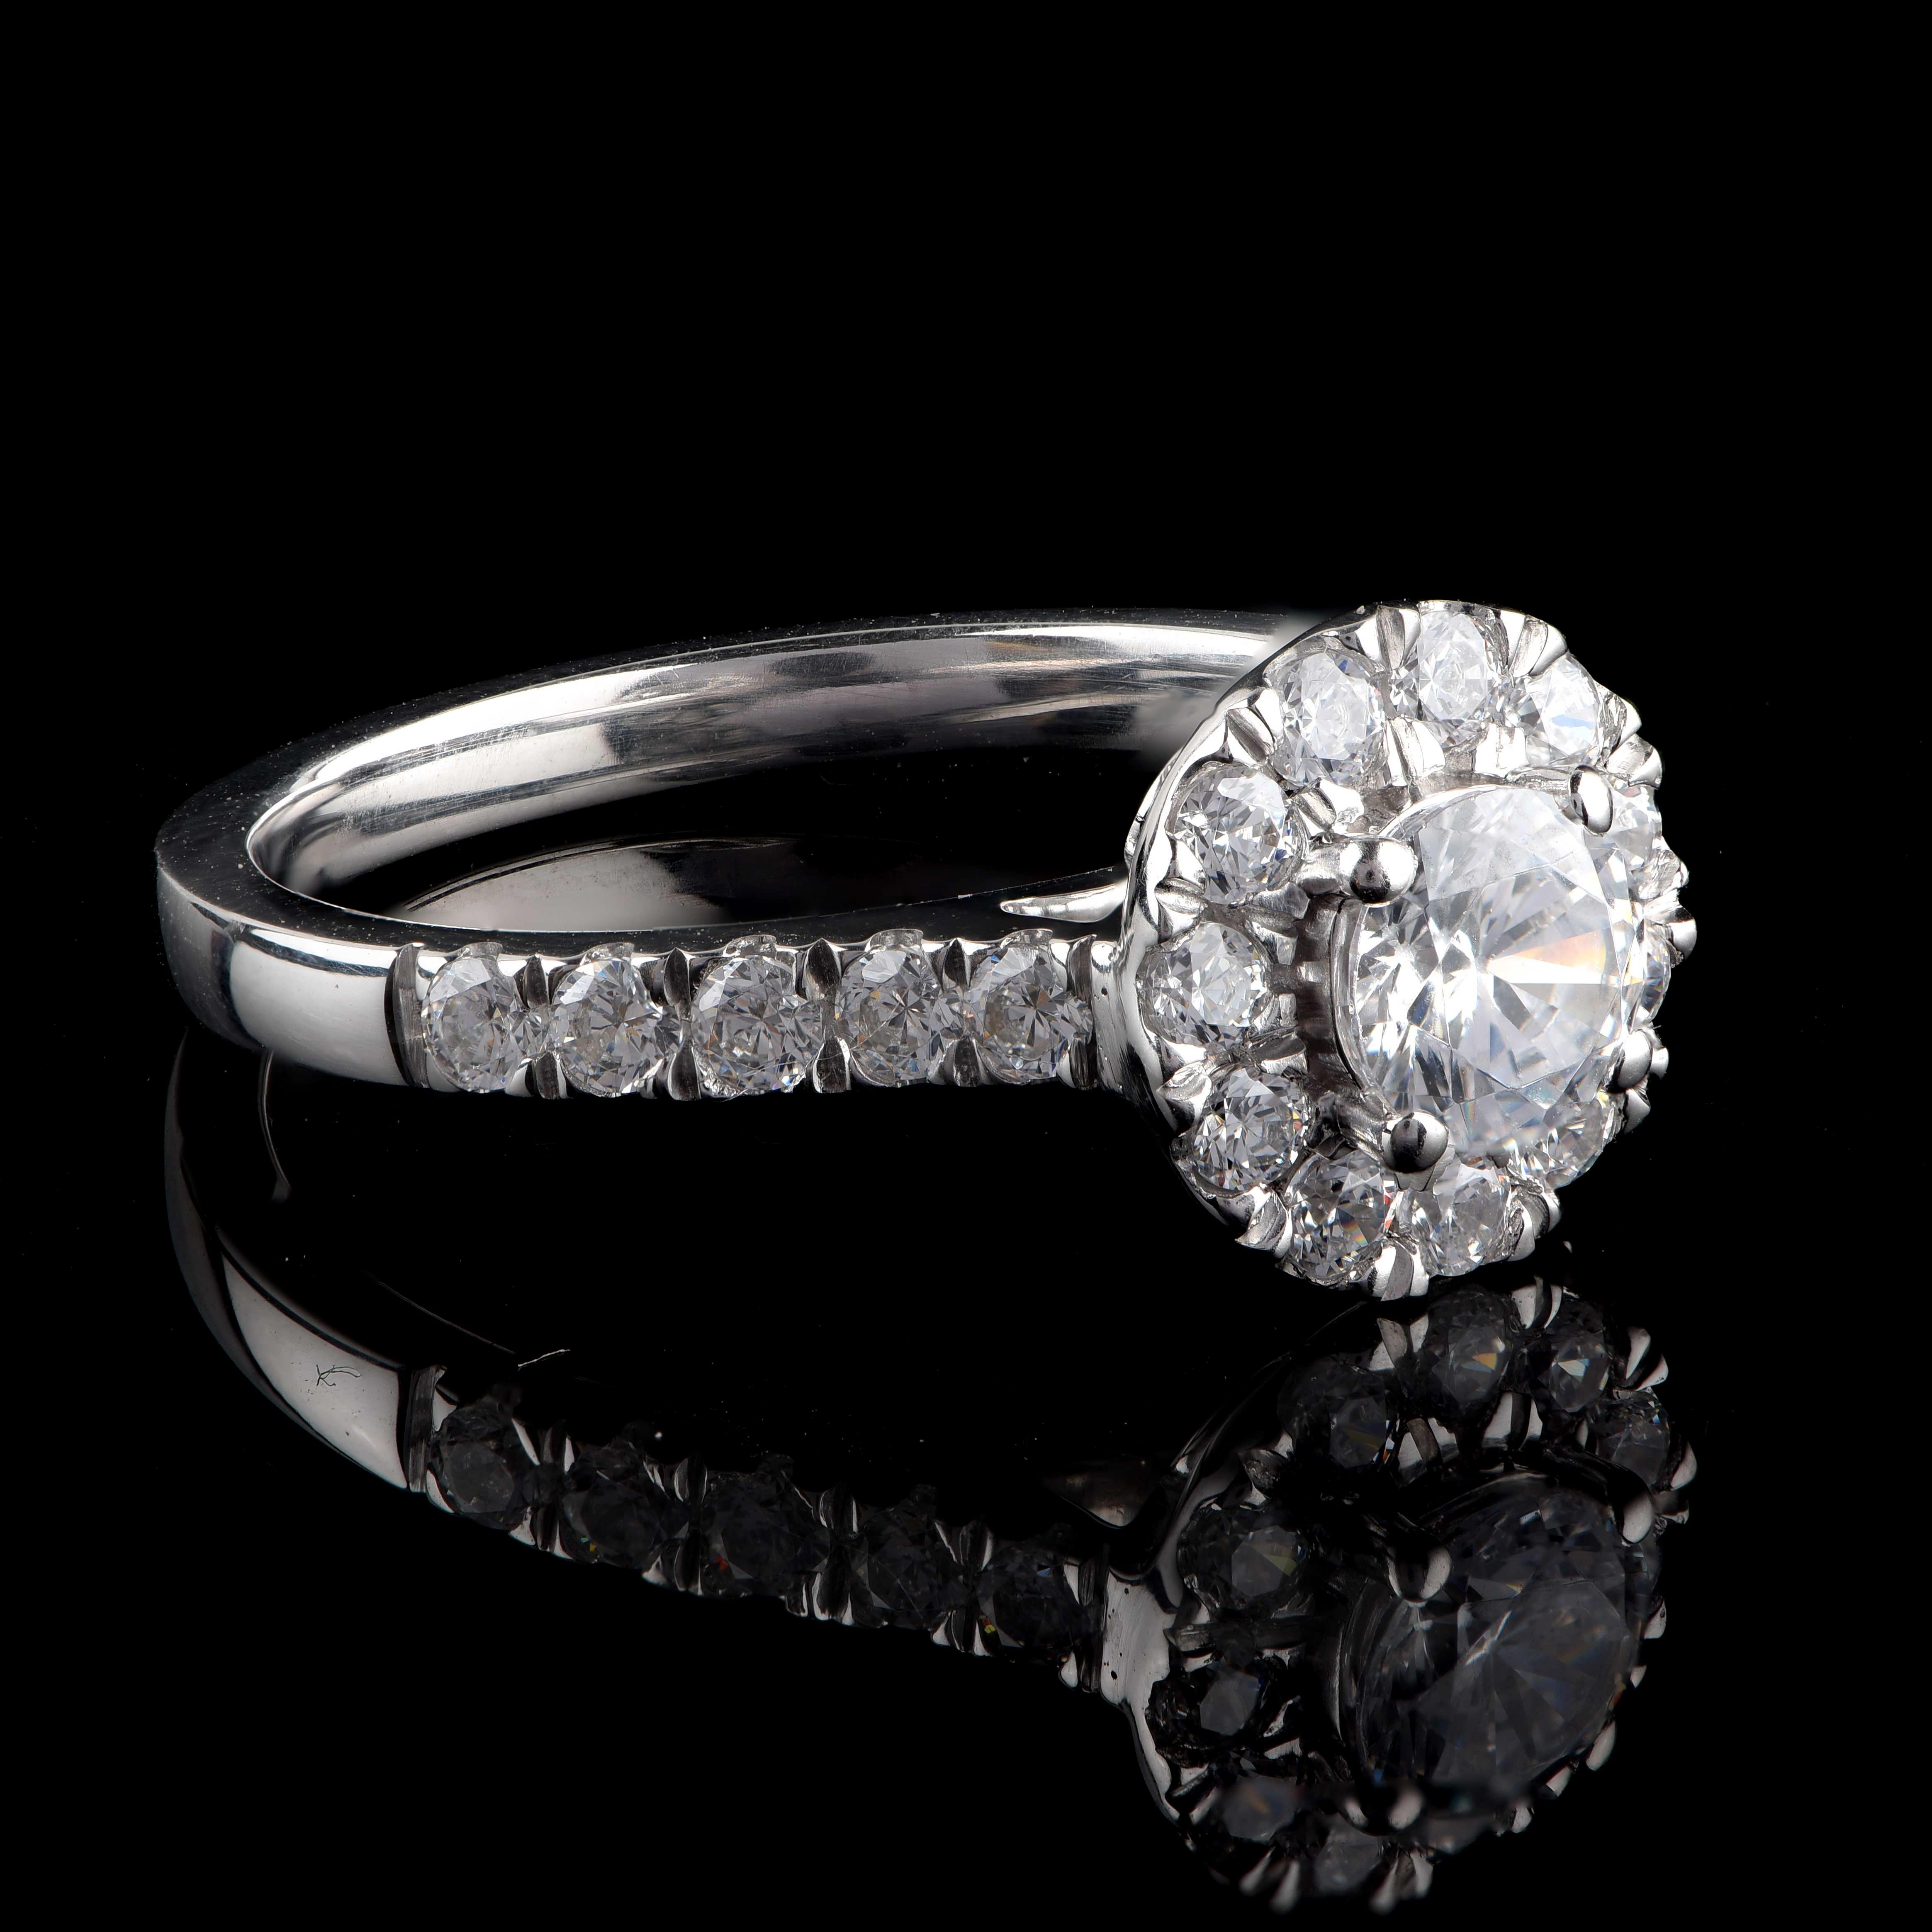 Cette bague de mariage est ornée d'une pierre centrale certifiée par le GIA et de 21 diamants taille brillant en sertissage à griffes. Elle est fabriquée en or blanc 18 carats. Les diamants sont classés Couleur H, Clarté SI1.